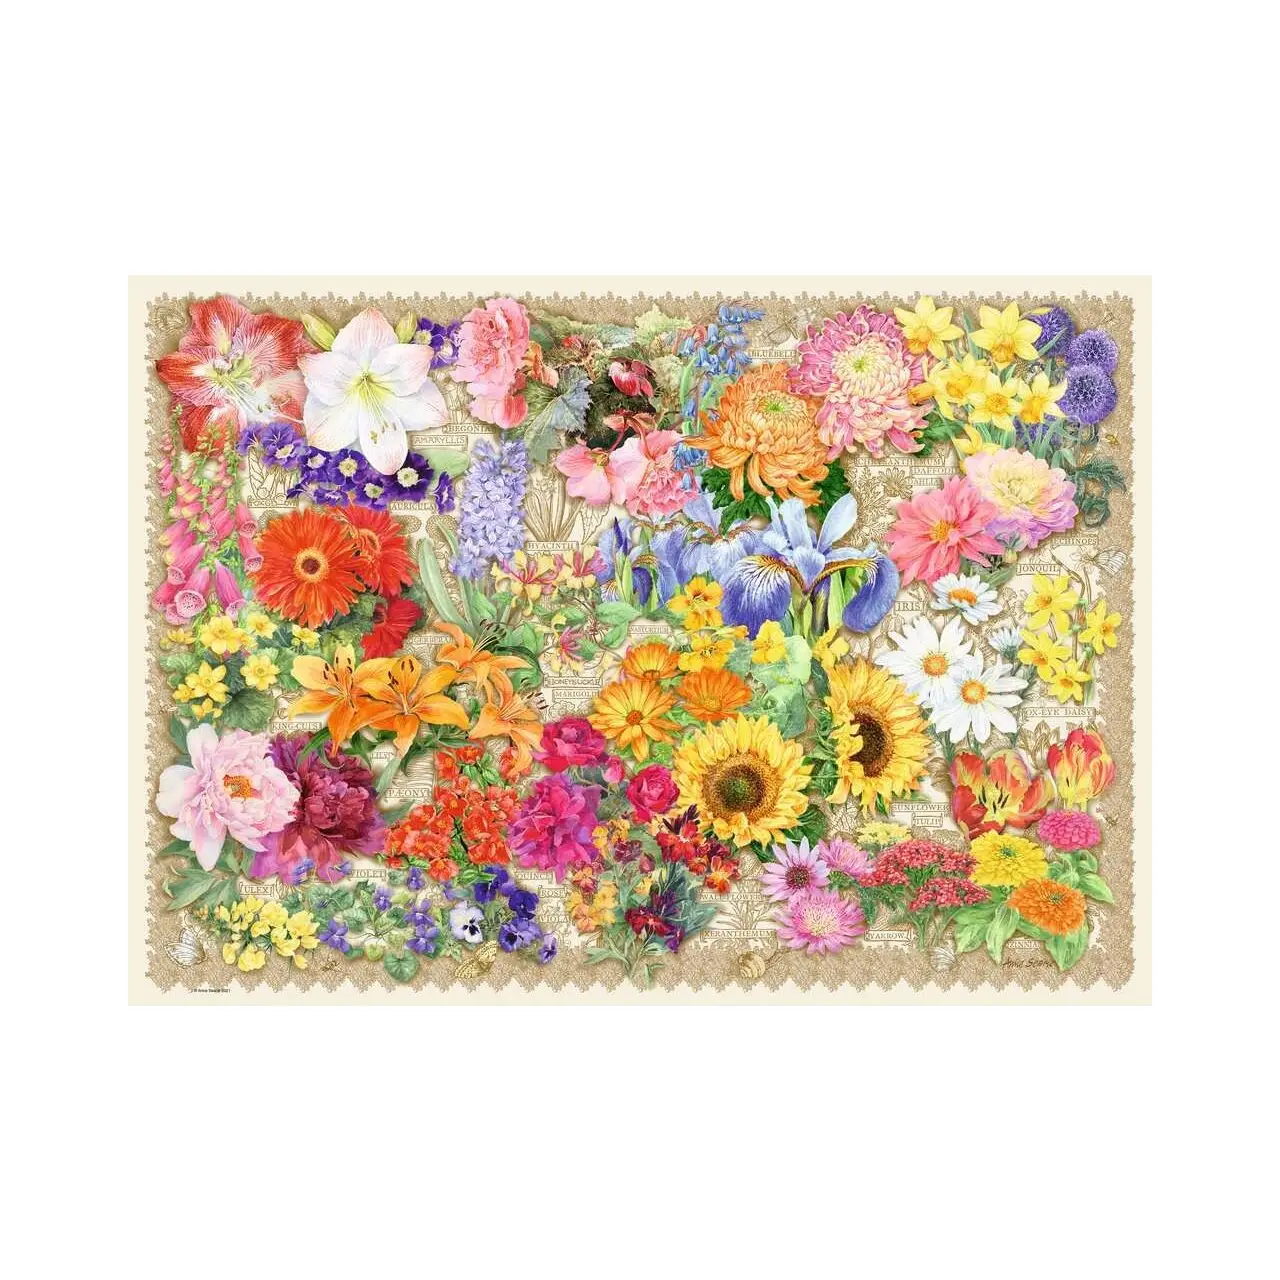 Teile Puzzle 1000 Blumen